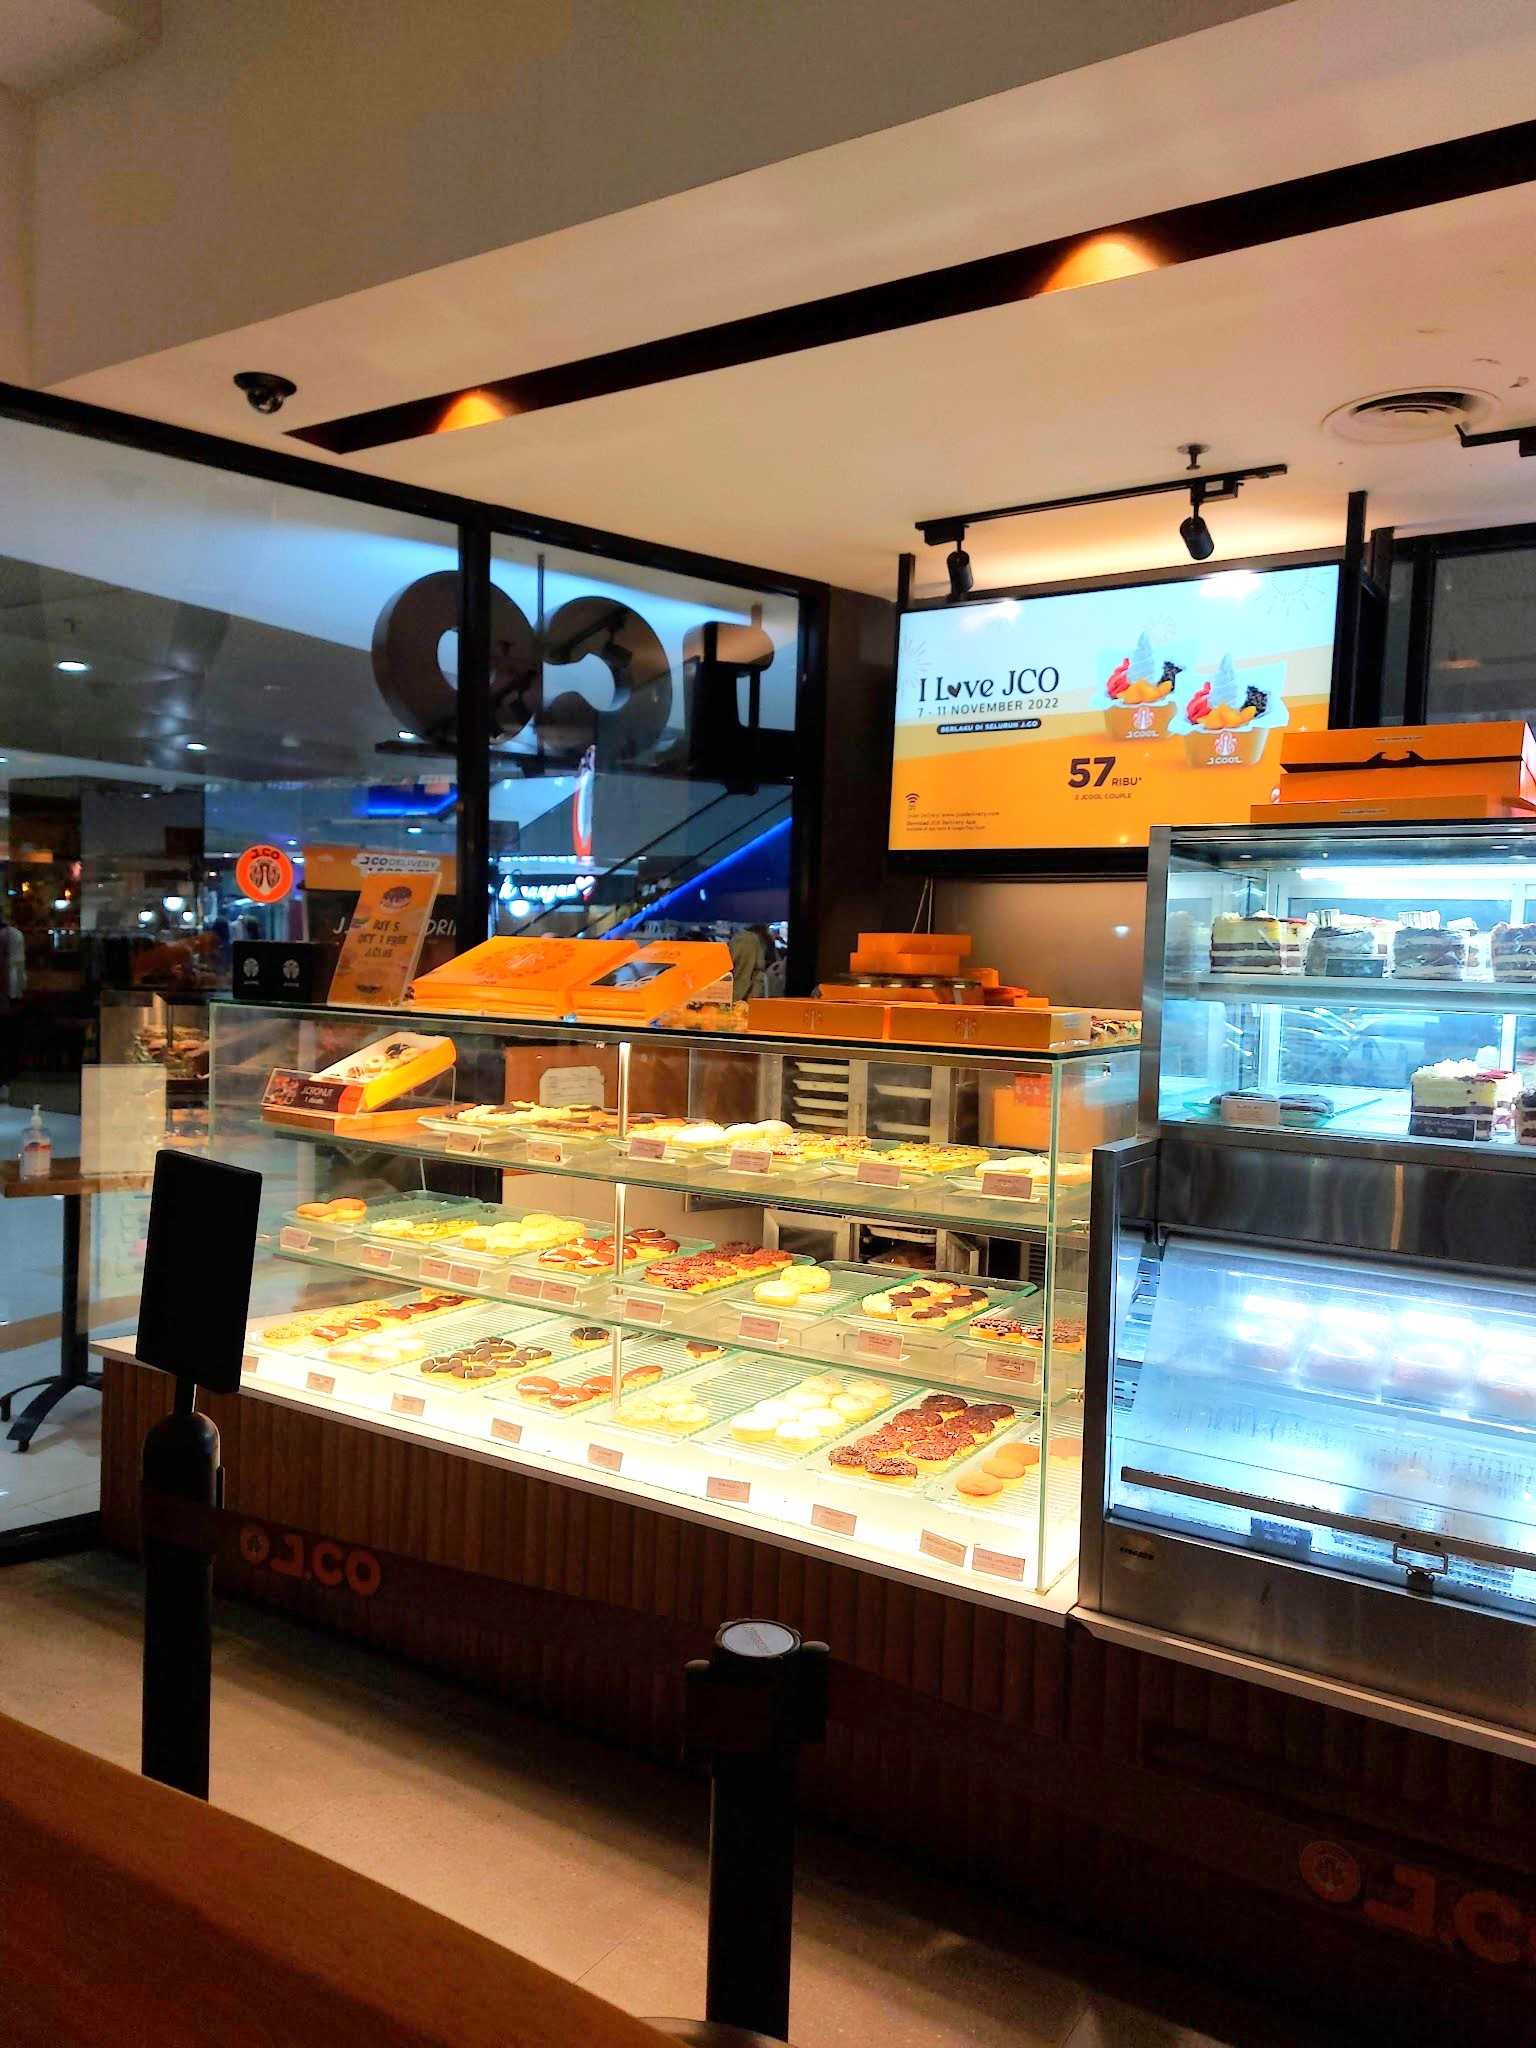 J.Co Donuts & Coffee Slipi Jaya 7